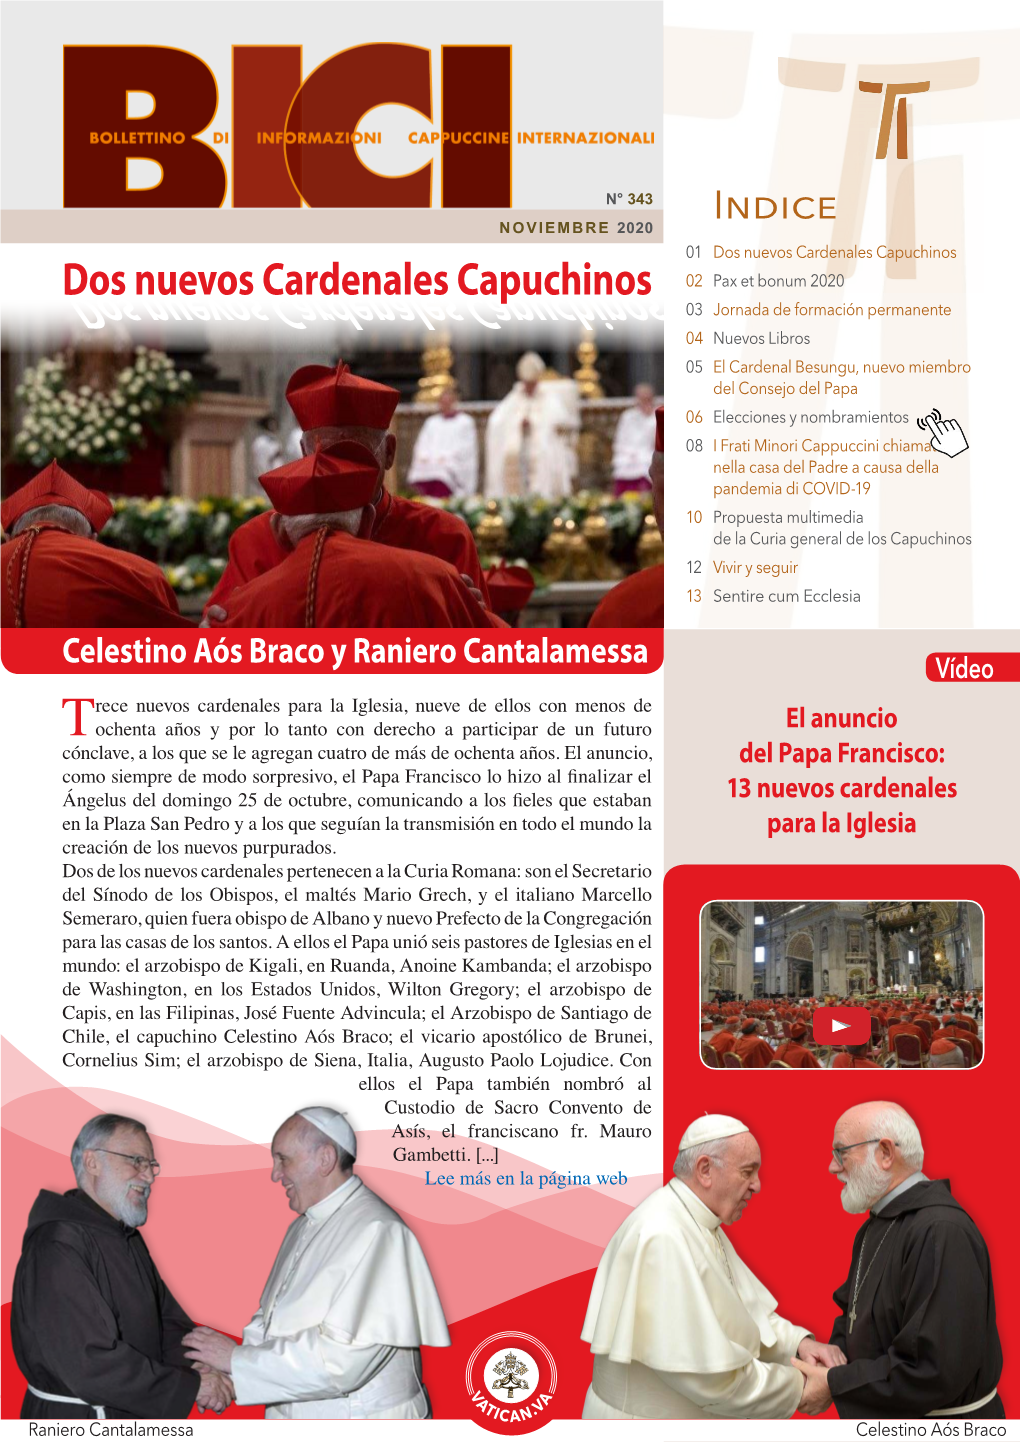 Dos Nuevos Cardenales Capuchinos